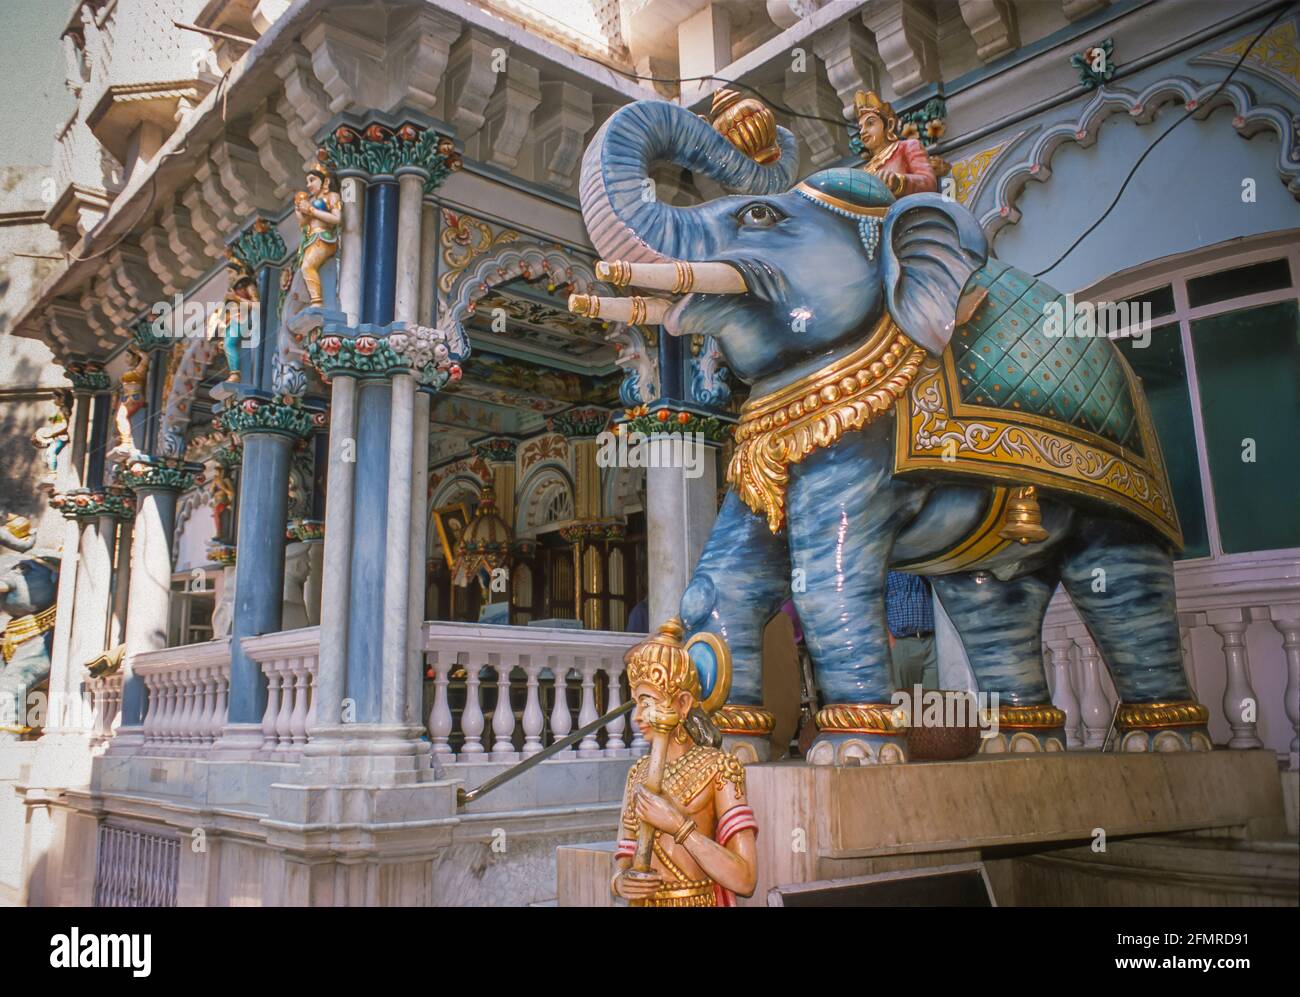 MUMBAI, INDIA - Jain Temple, built 1904, in Malabar area. Stock Photo